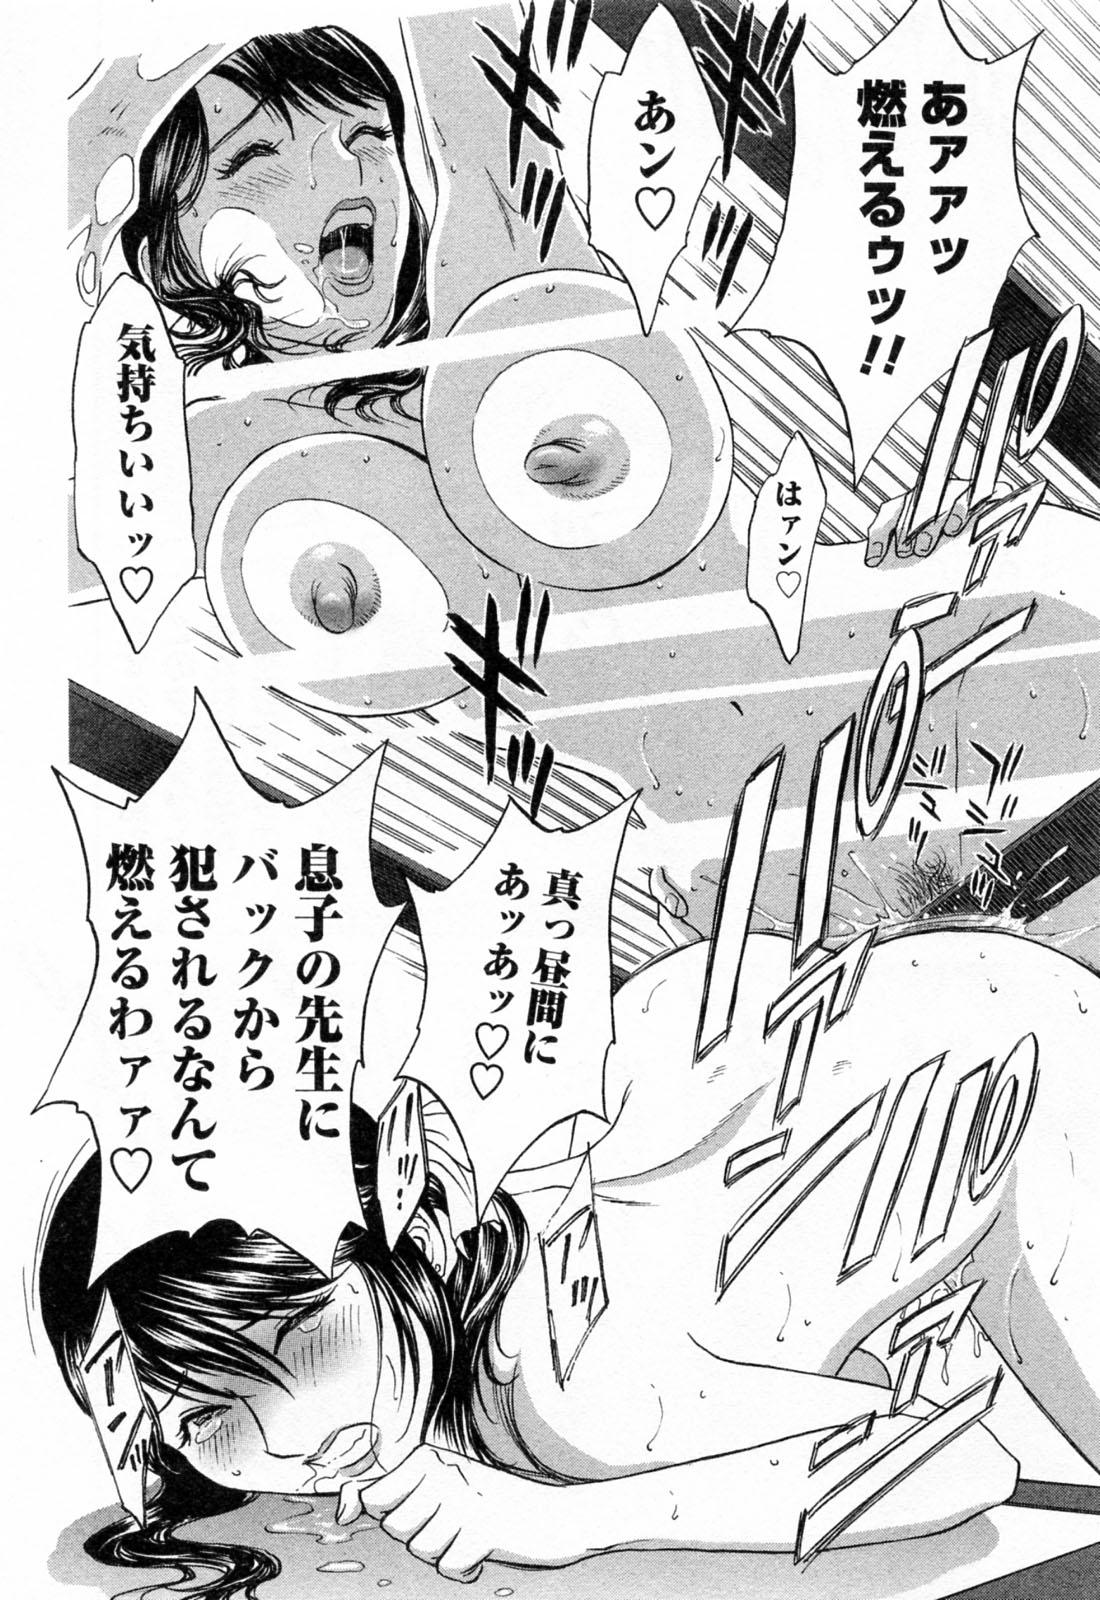 [Hidemaru] Mo-Retsu! Boin Sensei (Boing Boing Teacher) Vol.4 71